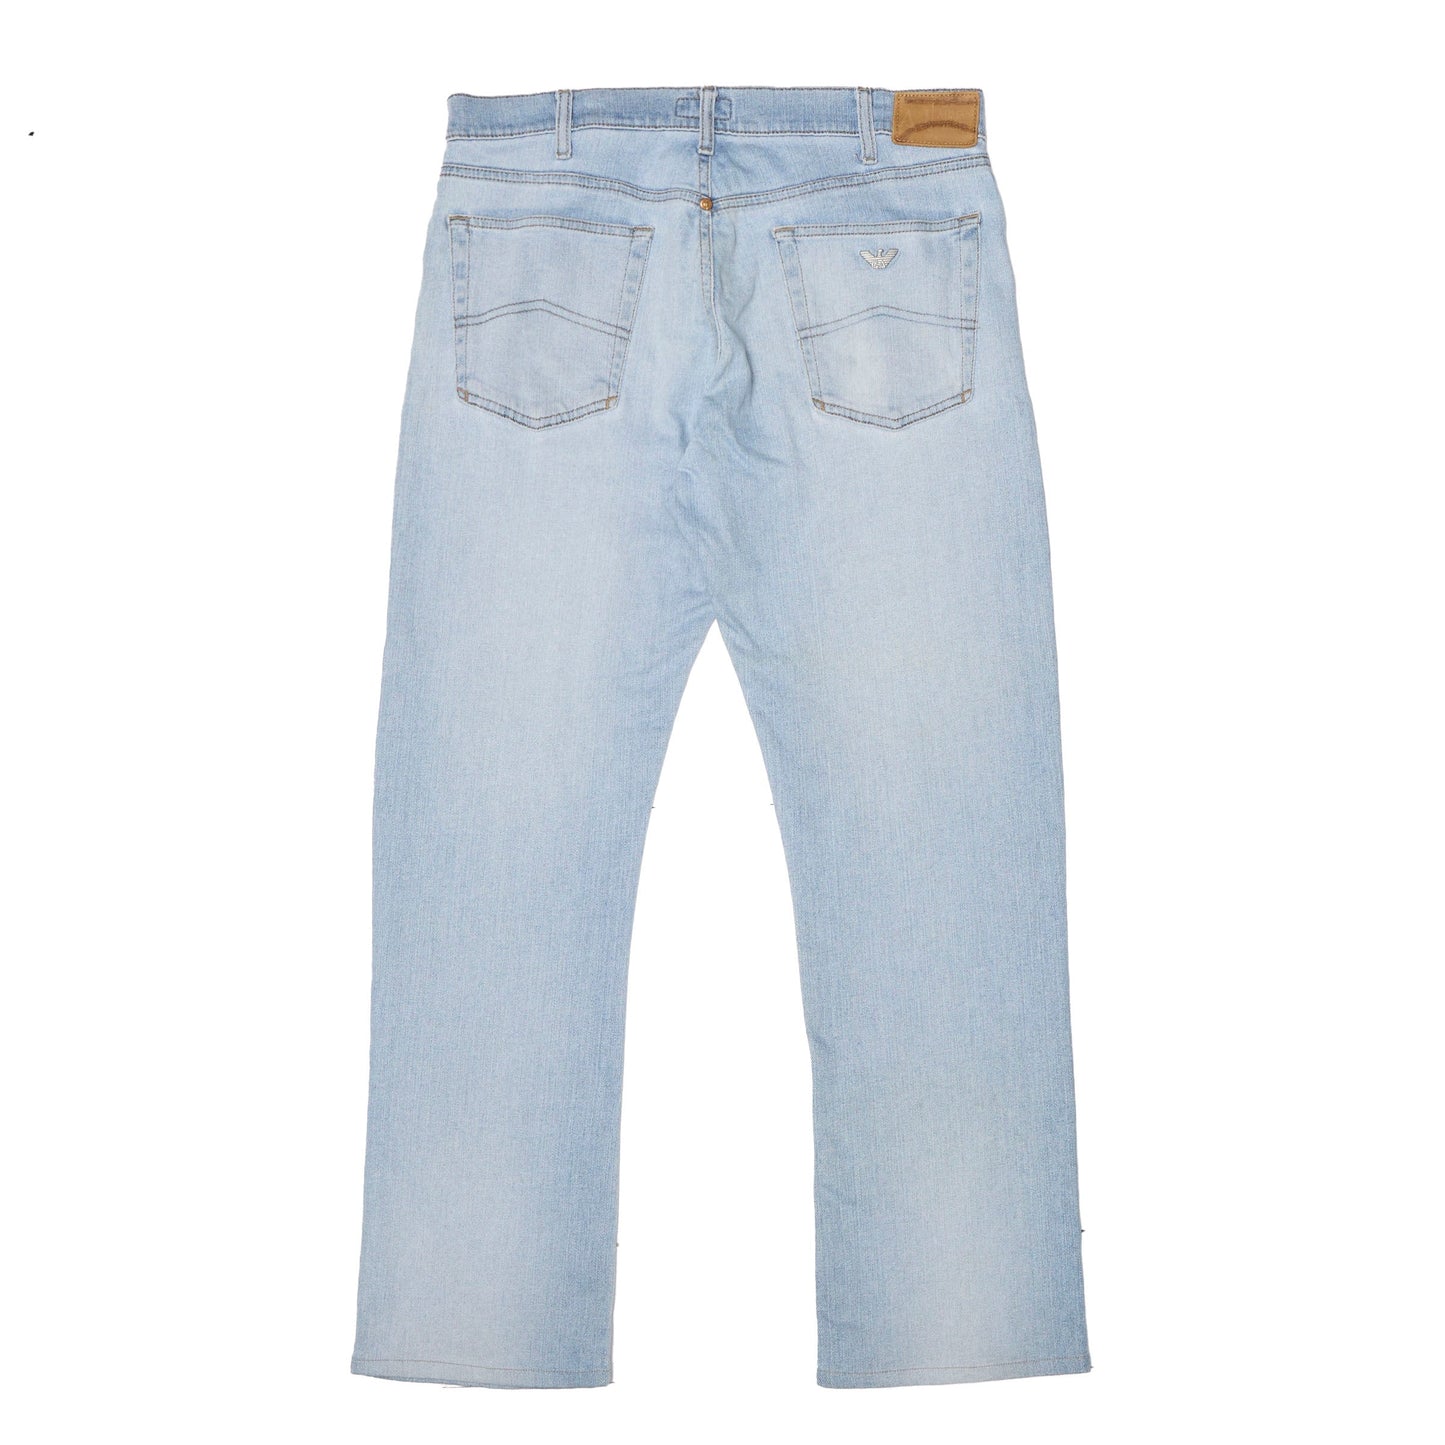 Armani Slim Fit Washed Jeans - W33" L33"